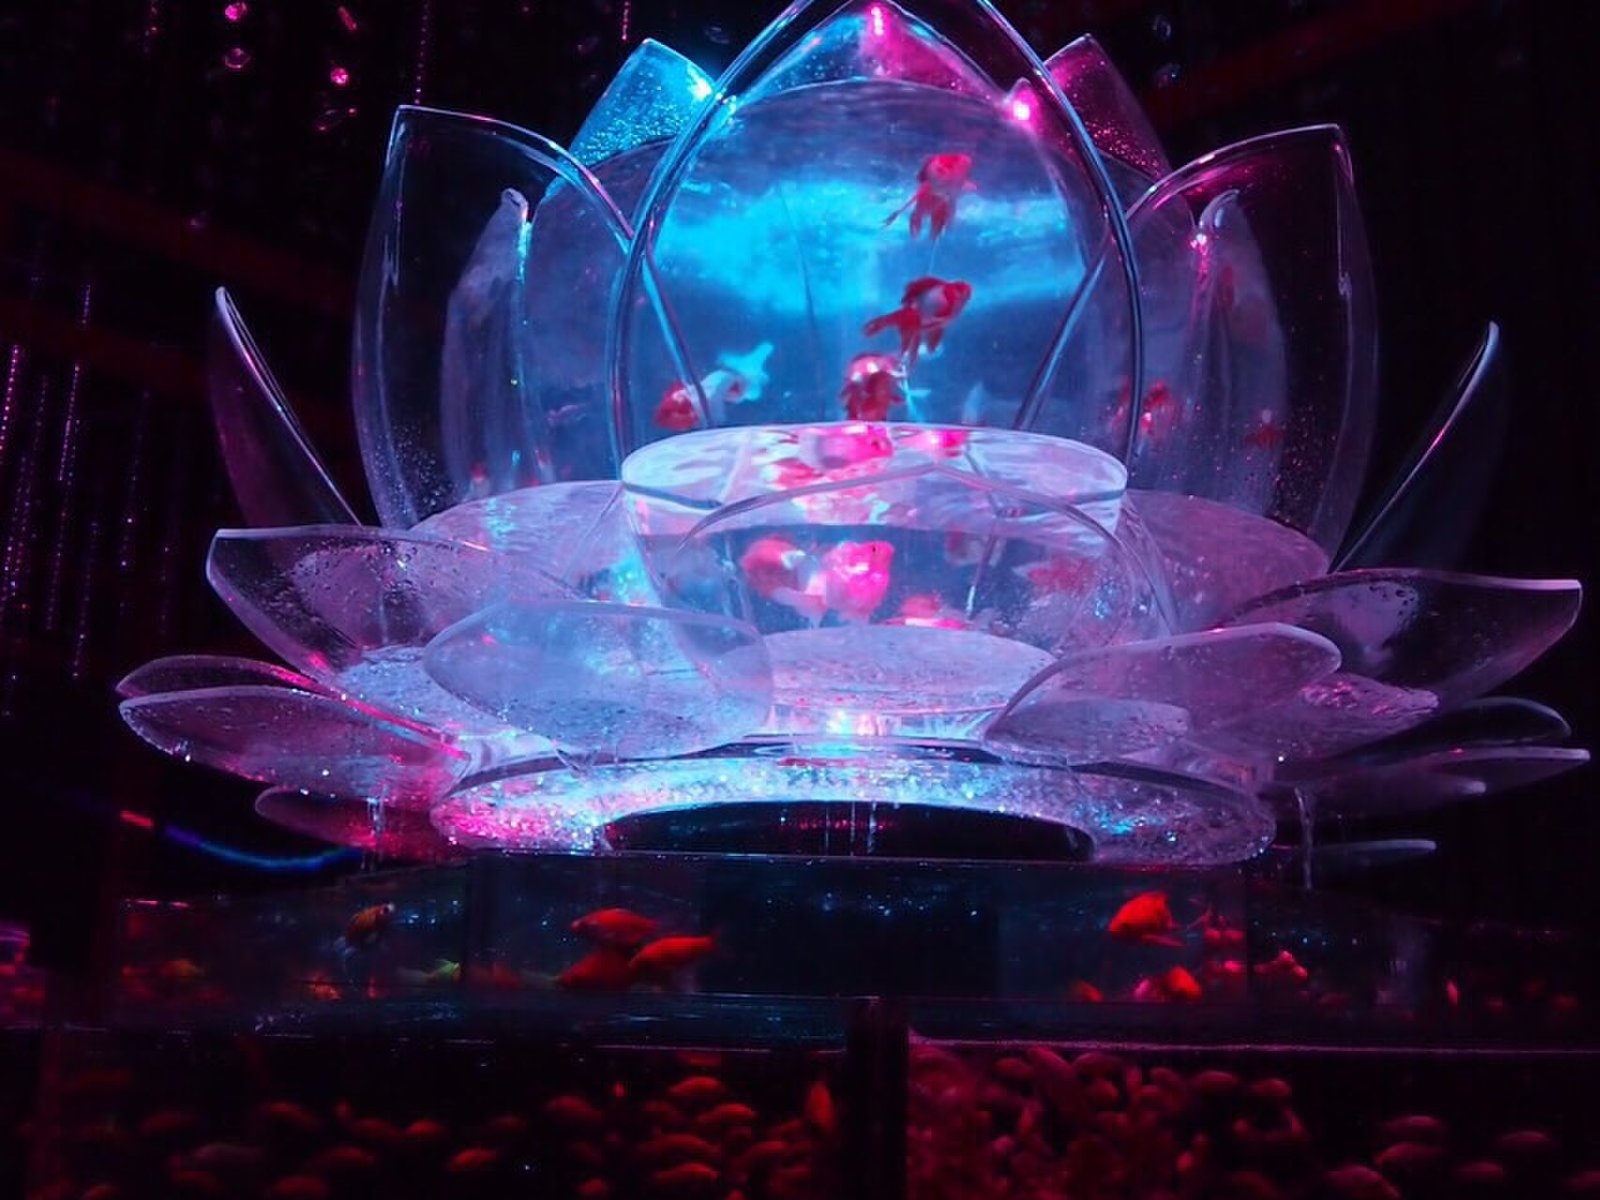 日本橋散歩 新しい金魚のアート アートアクアリウム 水と光と音楽で